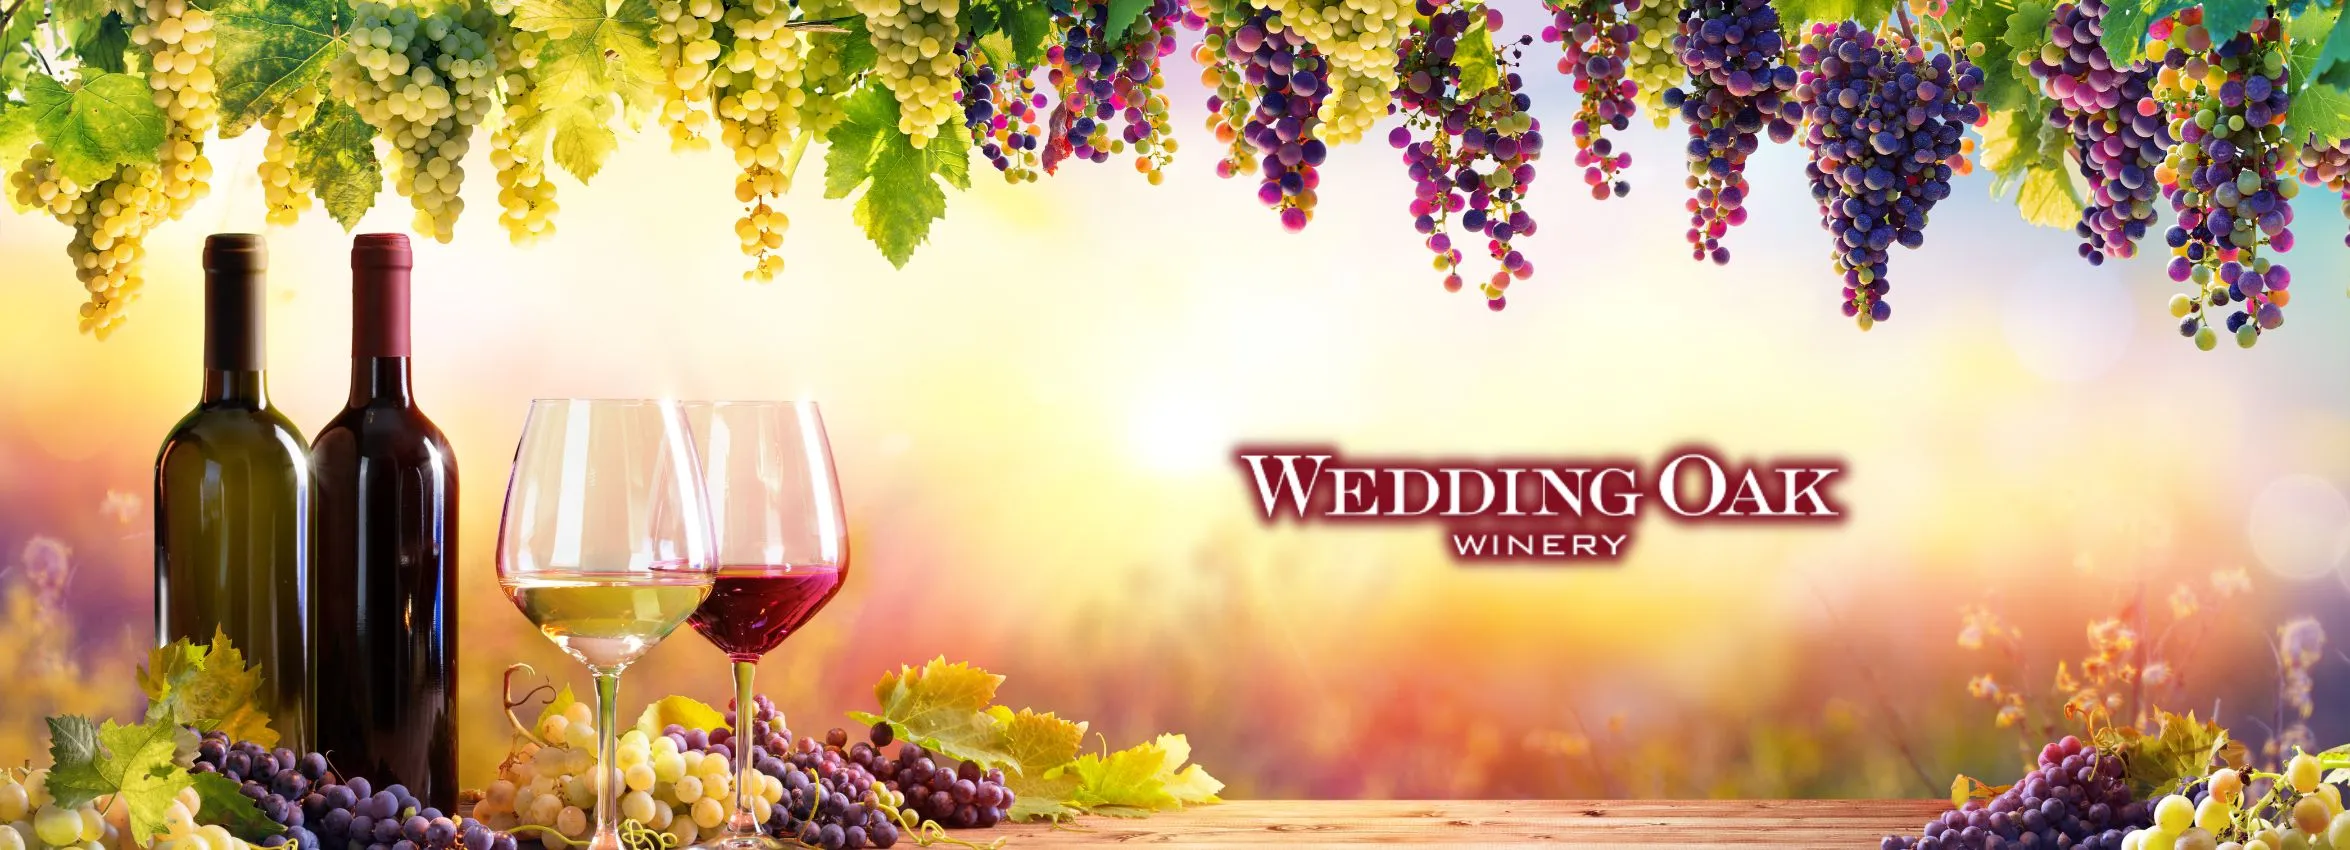 Wedding-Oaks-Winery_Desktop_ET